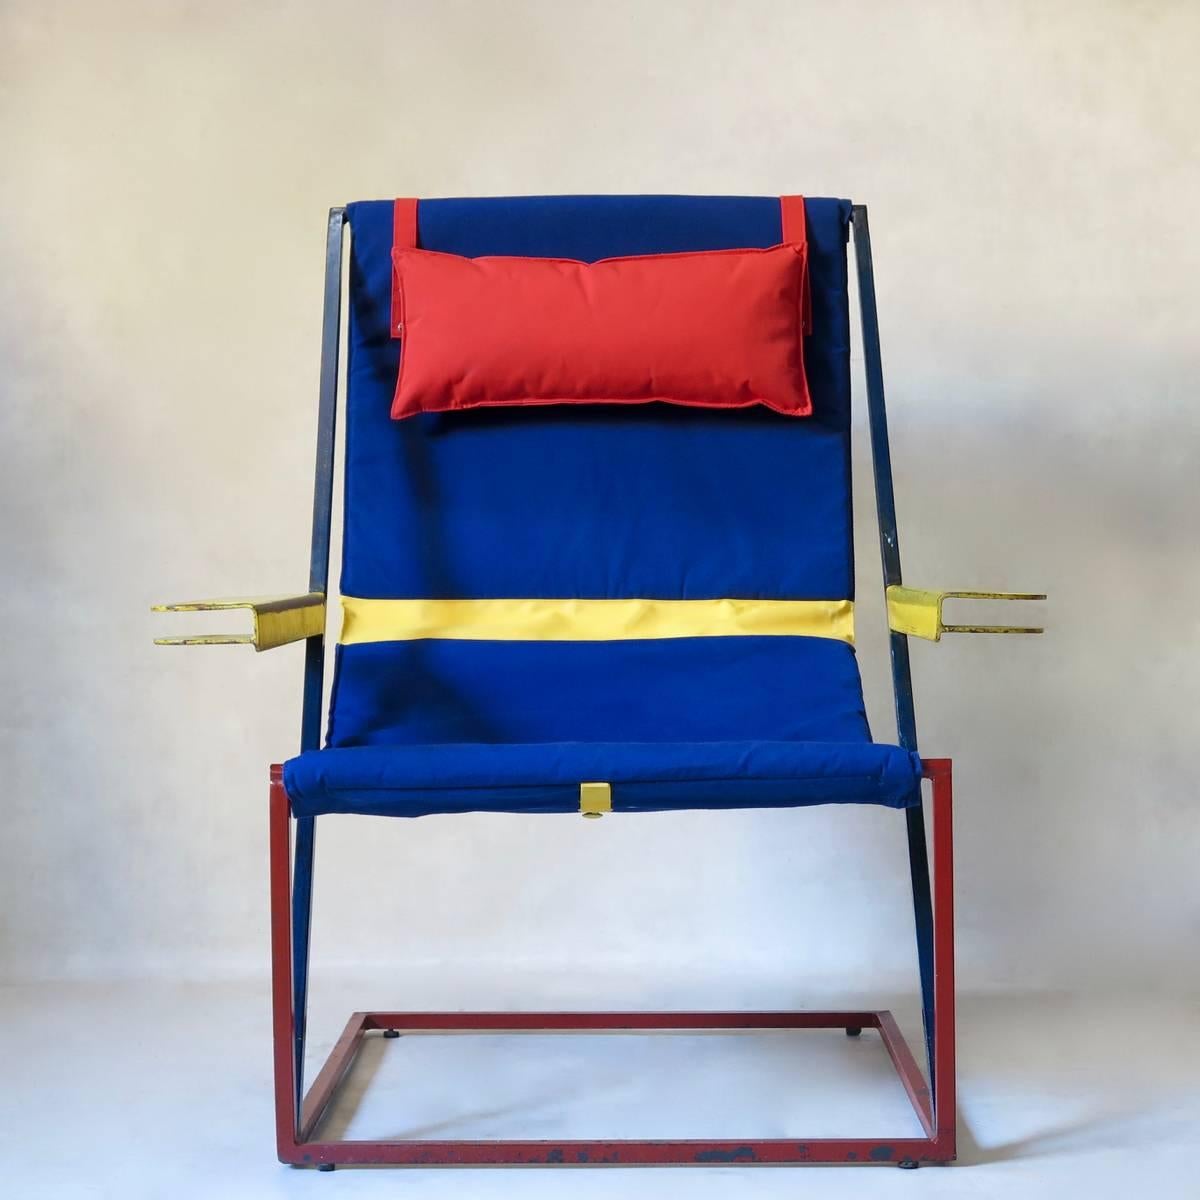 Paire de chaises longues absolument étonnante et unique en son genre, avec une structure en fer en porte-à-faux, avec une peinture d'origine rouge, bleue et jaune. Les accoudoirs sont dotés de porte-boissons en forme de coupe.
Nouvellement revêtu